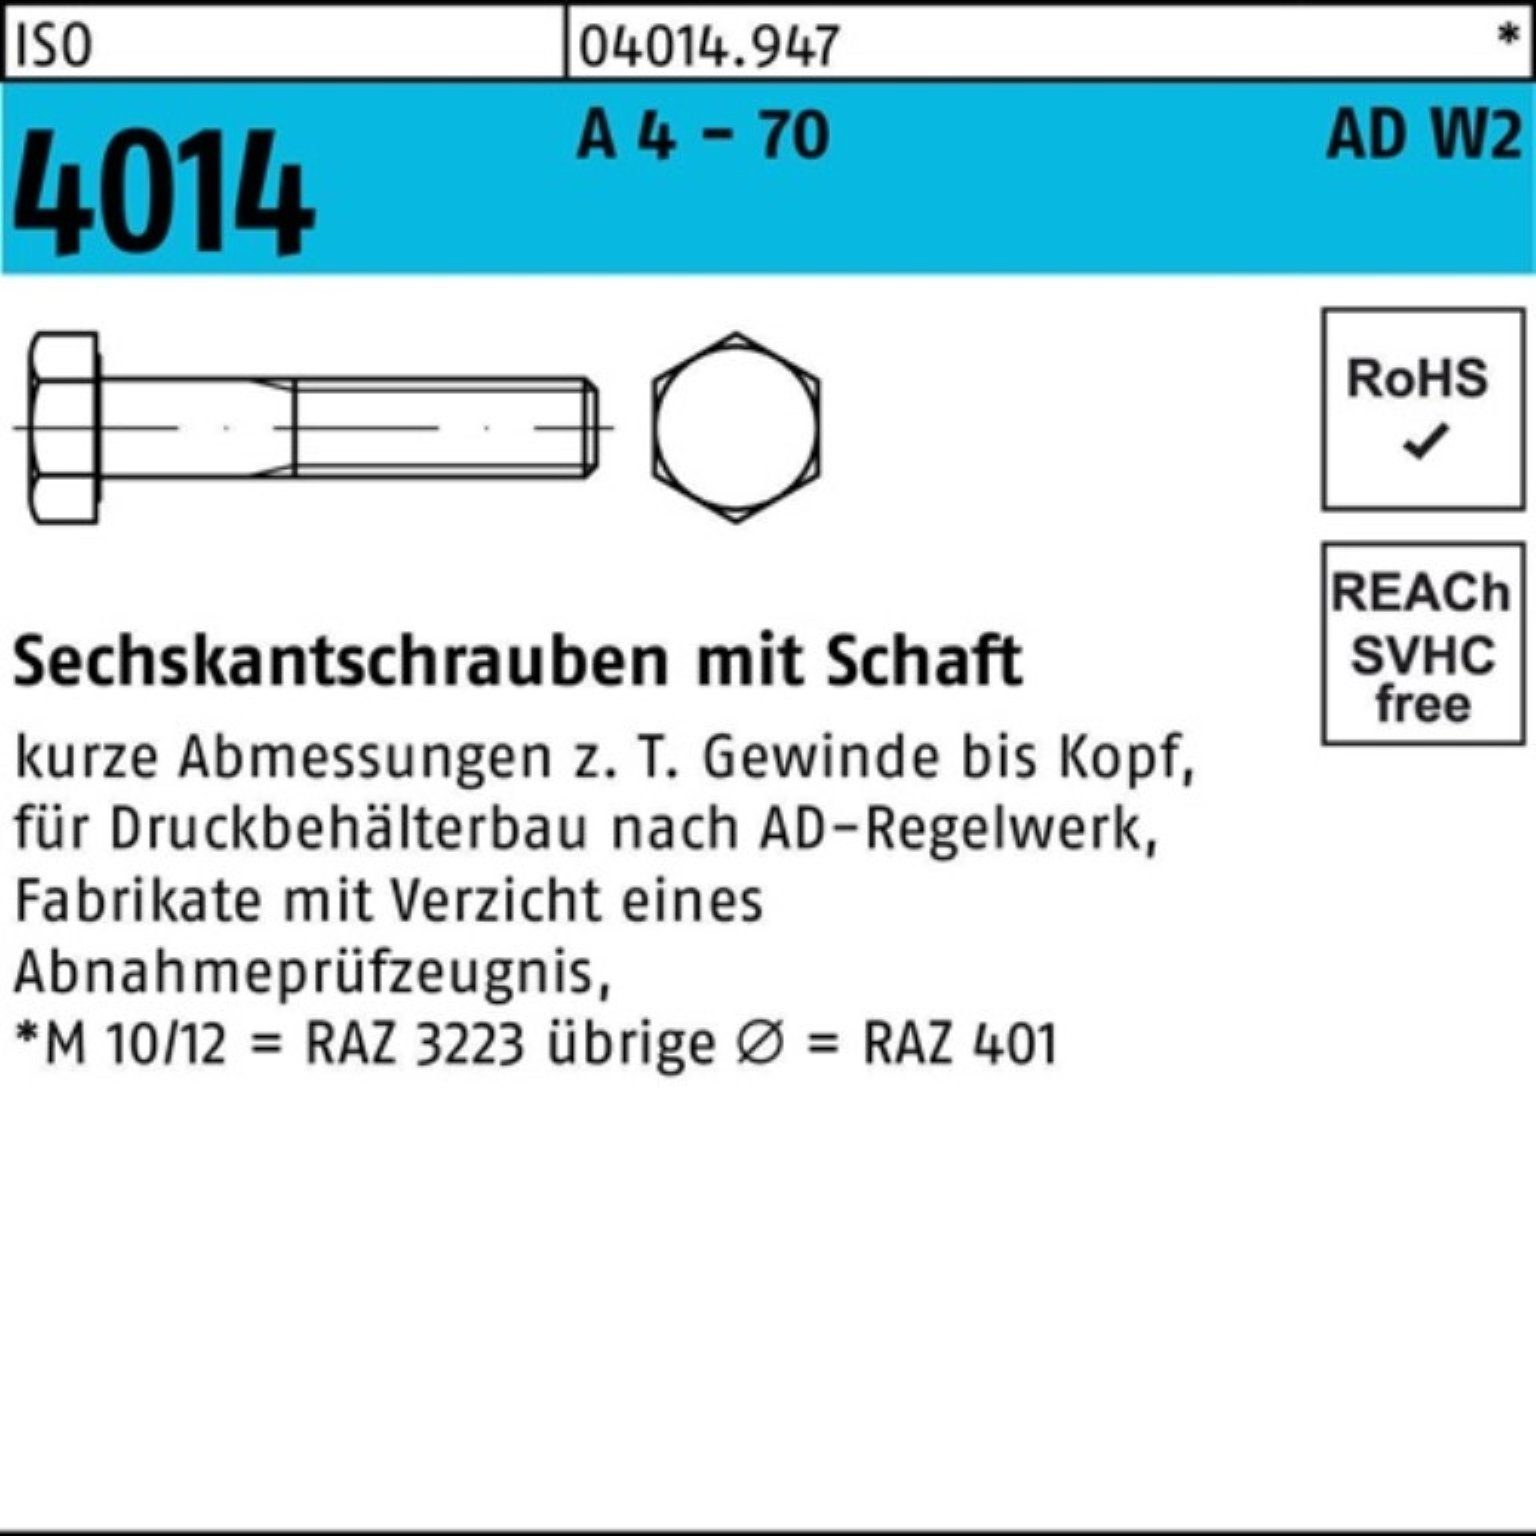 Bufab Sechskantschraube 100er Pack Sechskantschraube ISO 4014 Schaft M24x 90 A 4 - 70 AD-W2 1